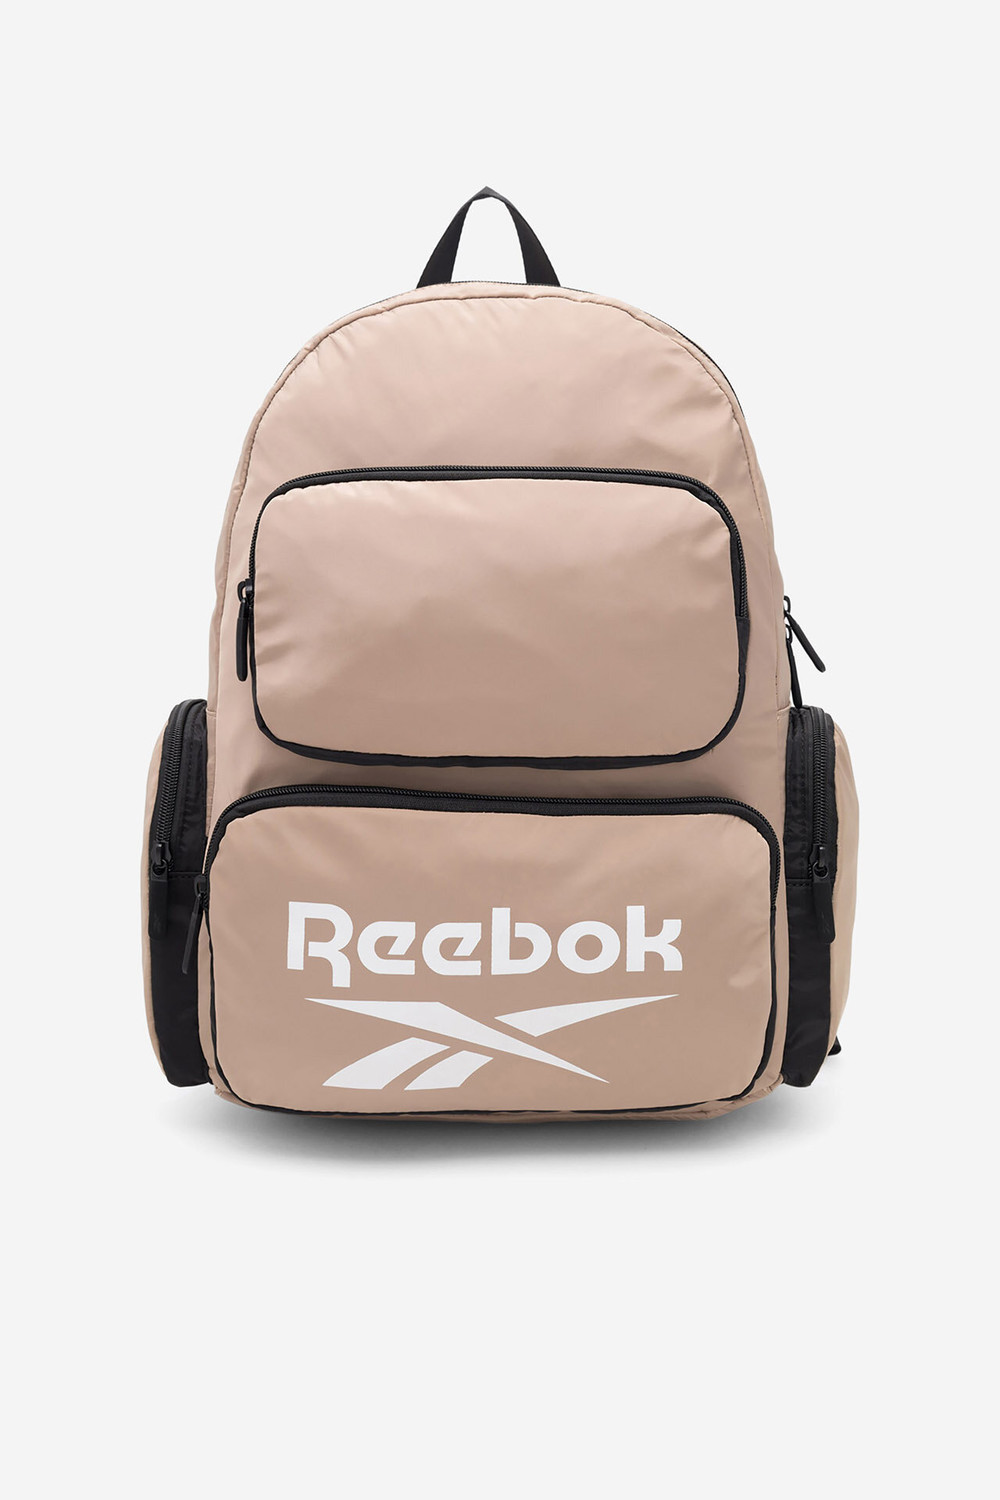 Batohy a tašky Reebok RBK-P-023-CCC